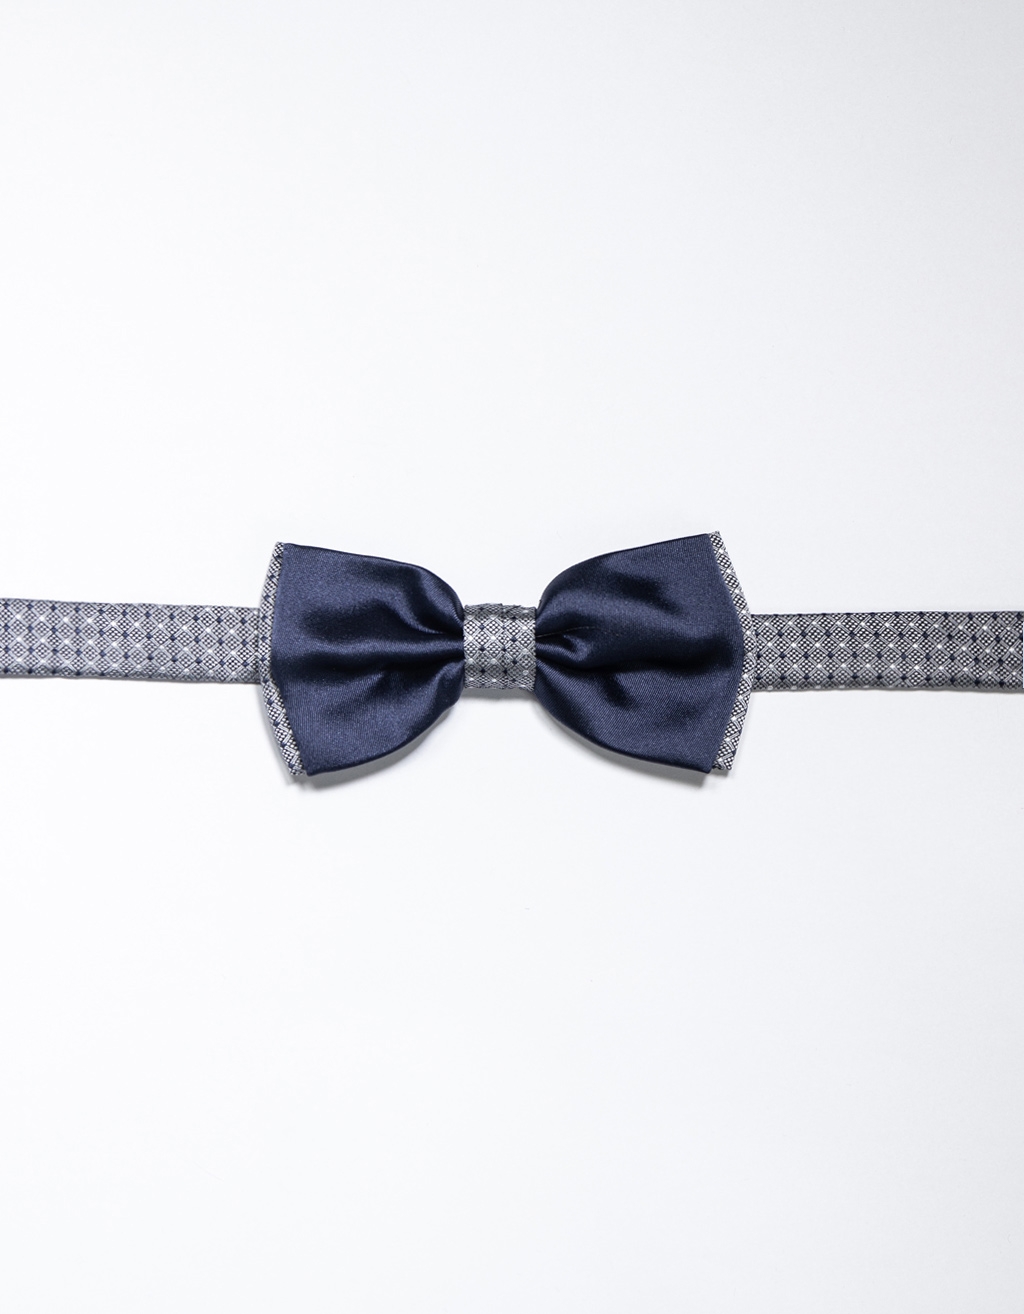 Fancy bow tie